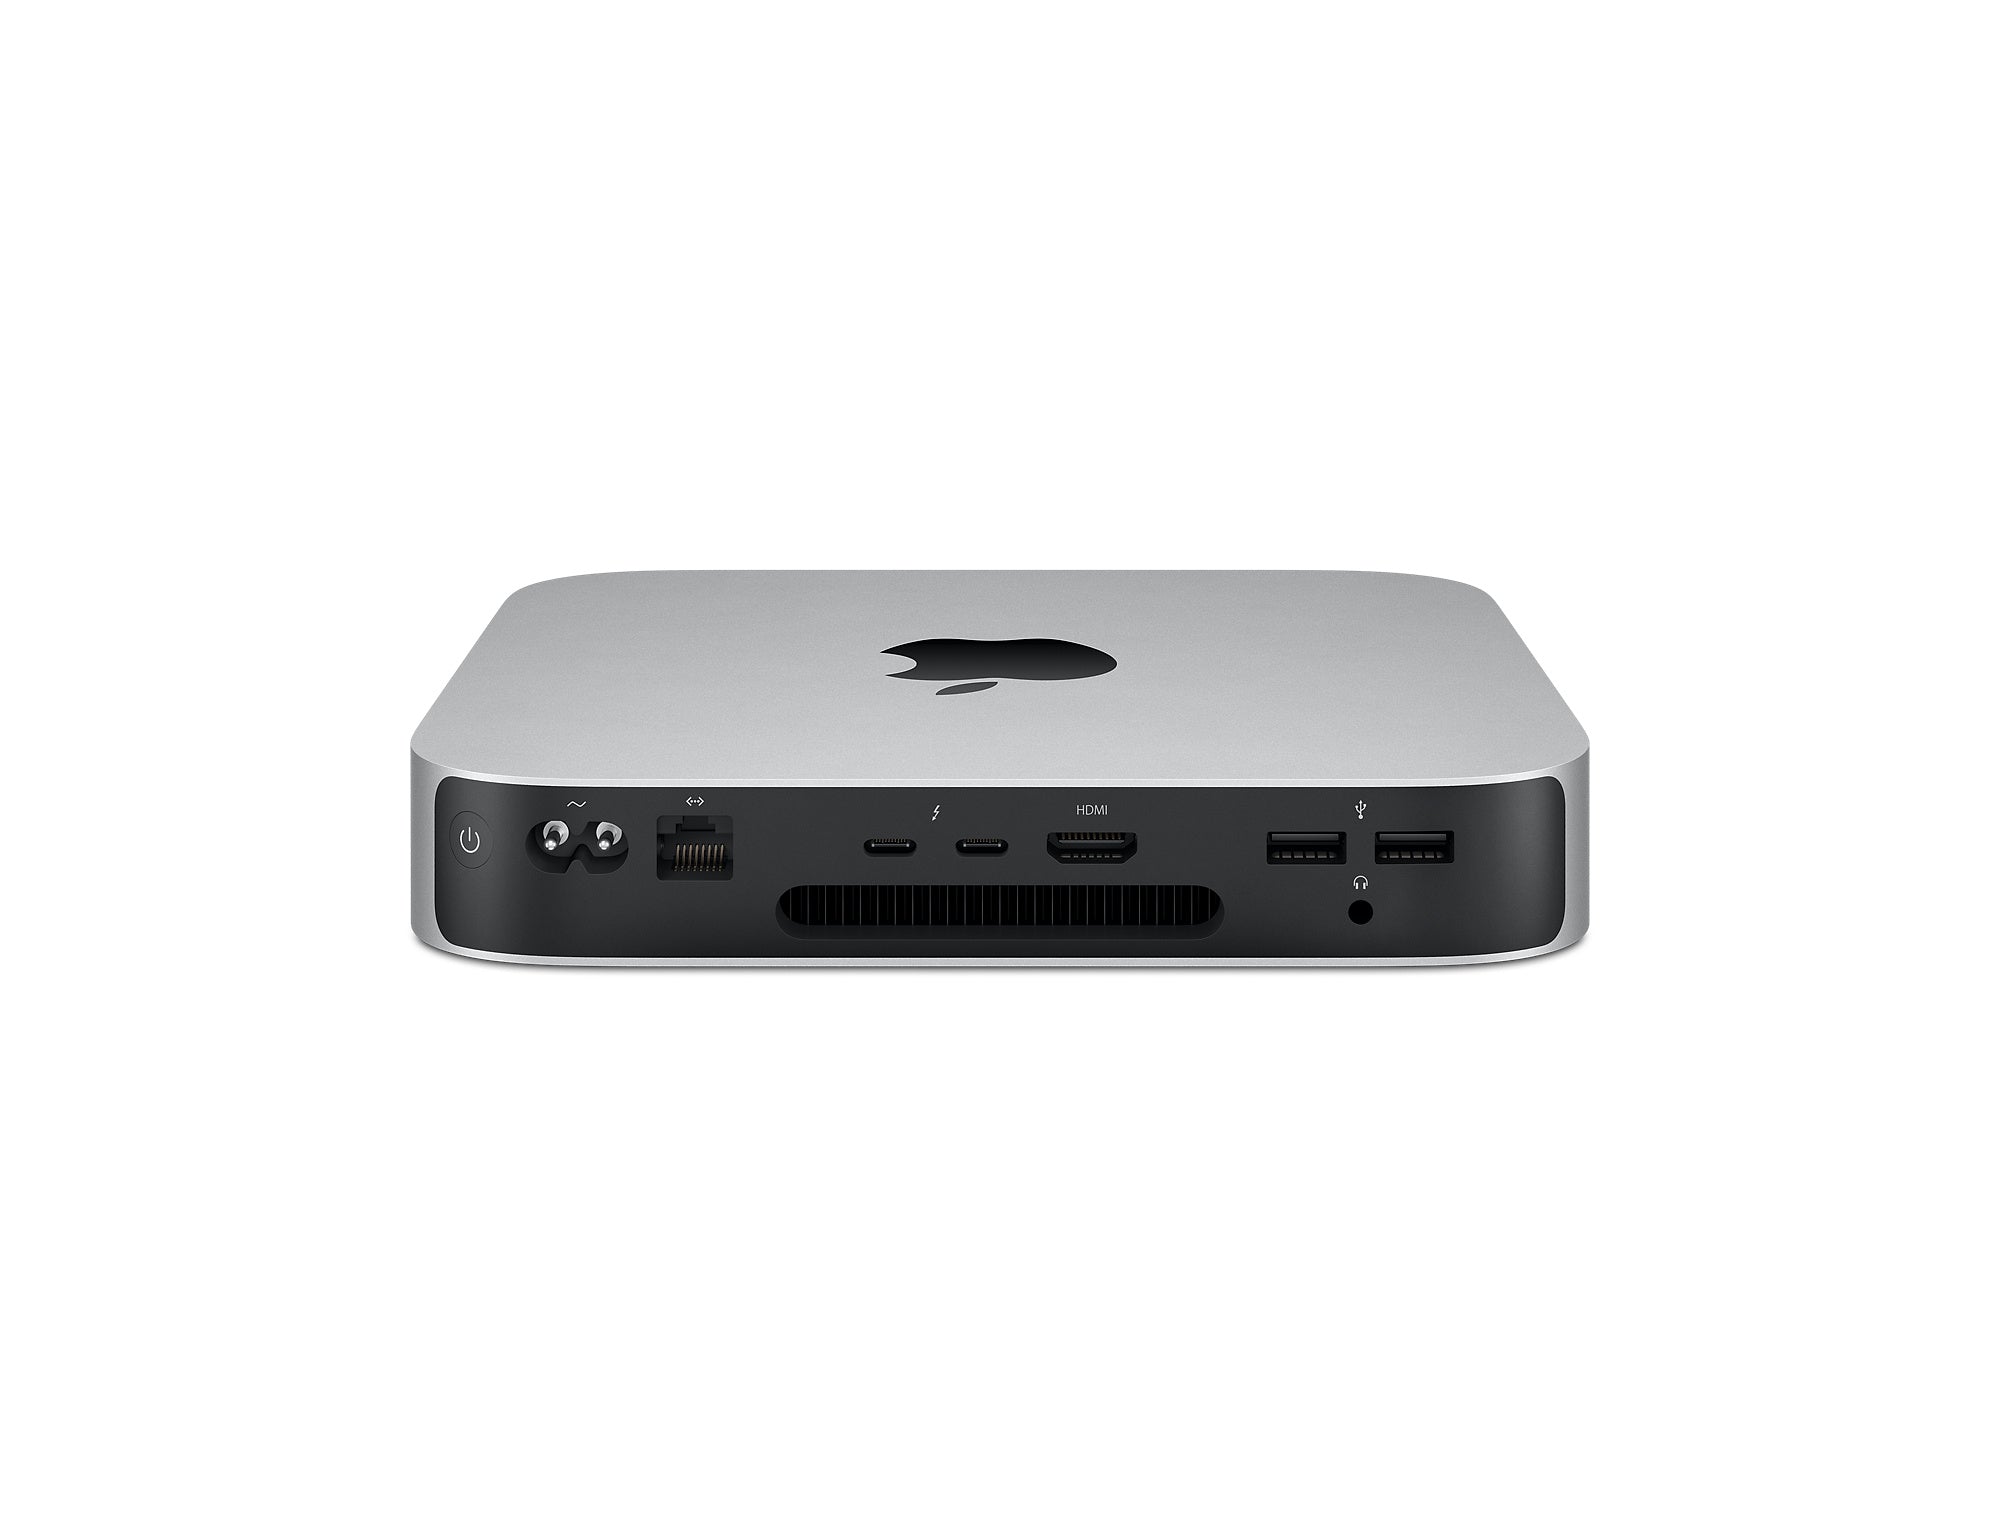 Mac mini: Apple M1 chip with 8 core CPU and 8 core GPU, 512GB SSD